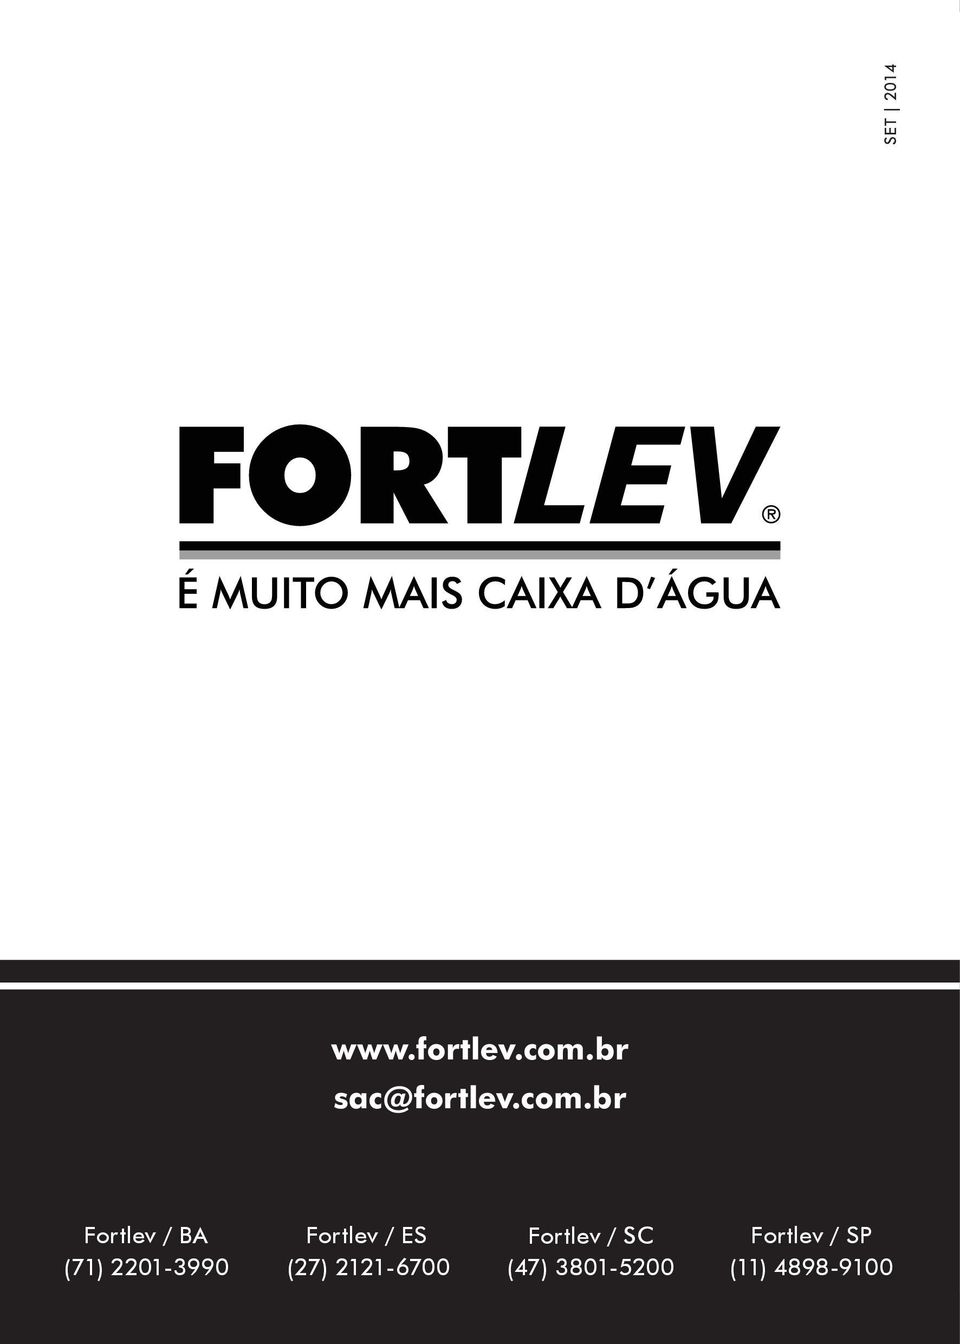 Fortlev / ES (27) 2121-6700 Fortlev / SC